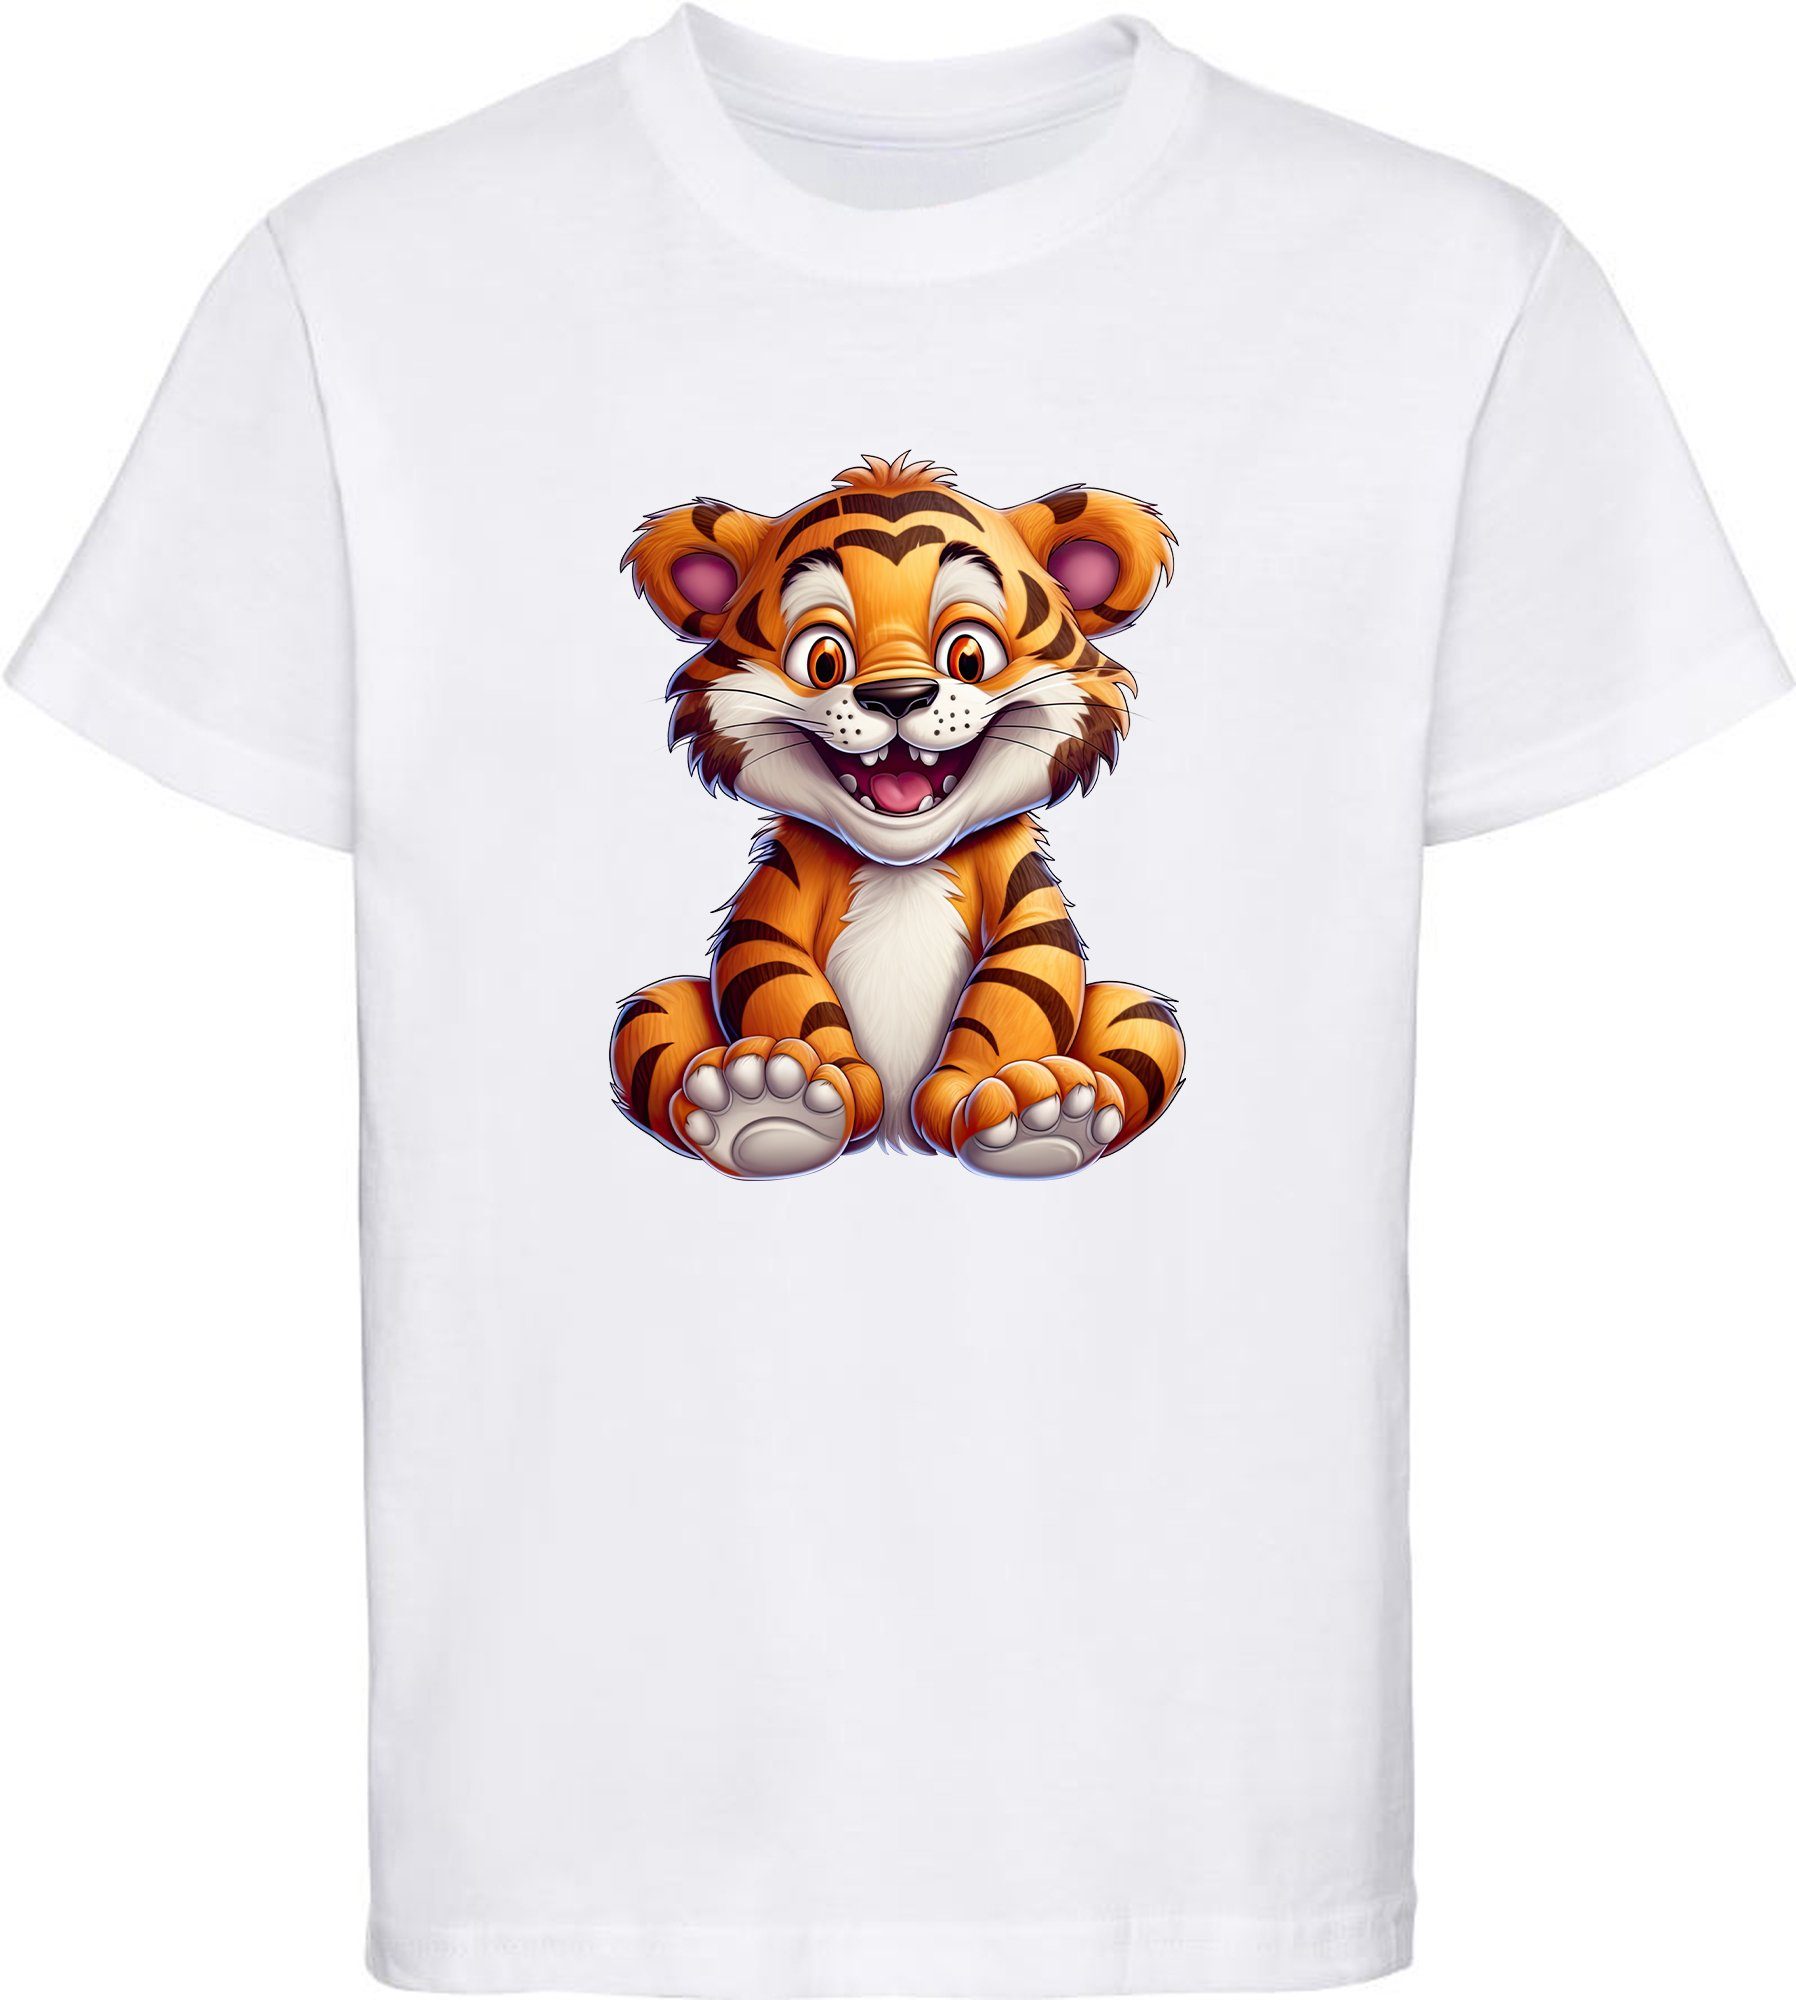 MyDesign24 T-Shirt Kinder Wildtier Print Shirt bedruckt - Baby Tiger Baumwollshirt mit Aufdruck, i278 weiss